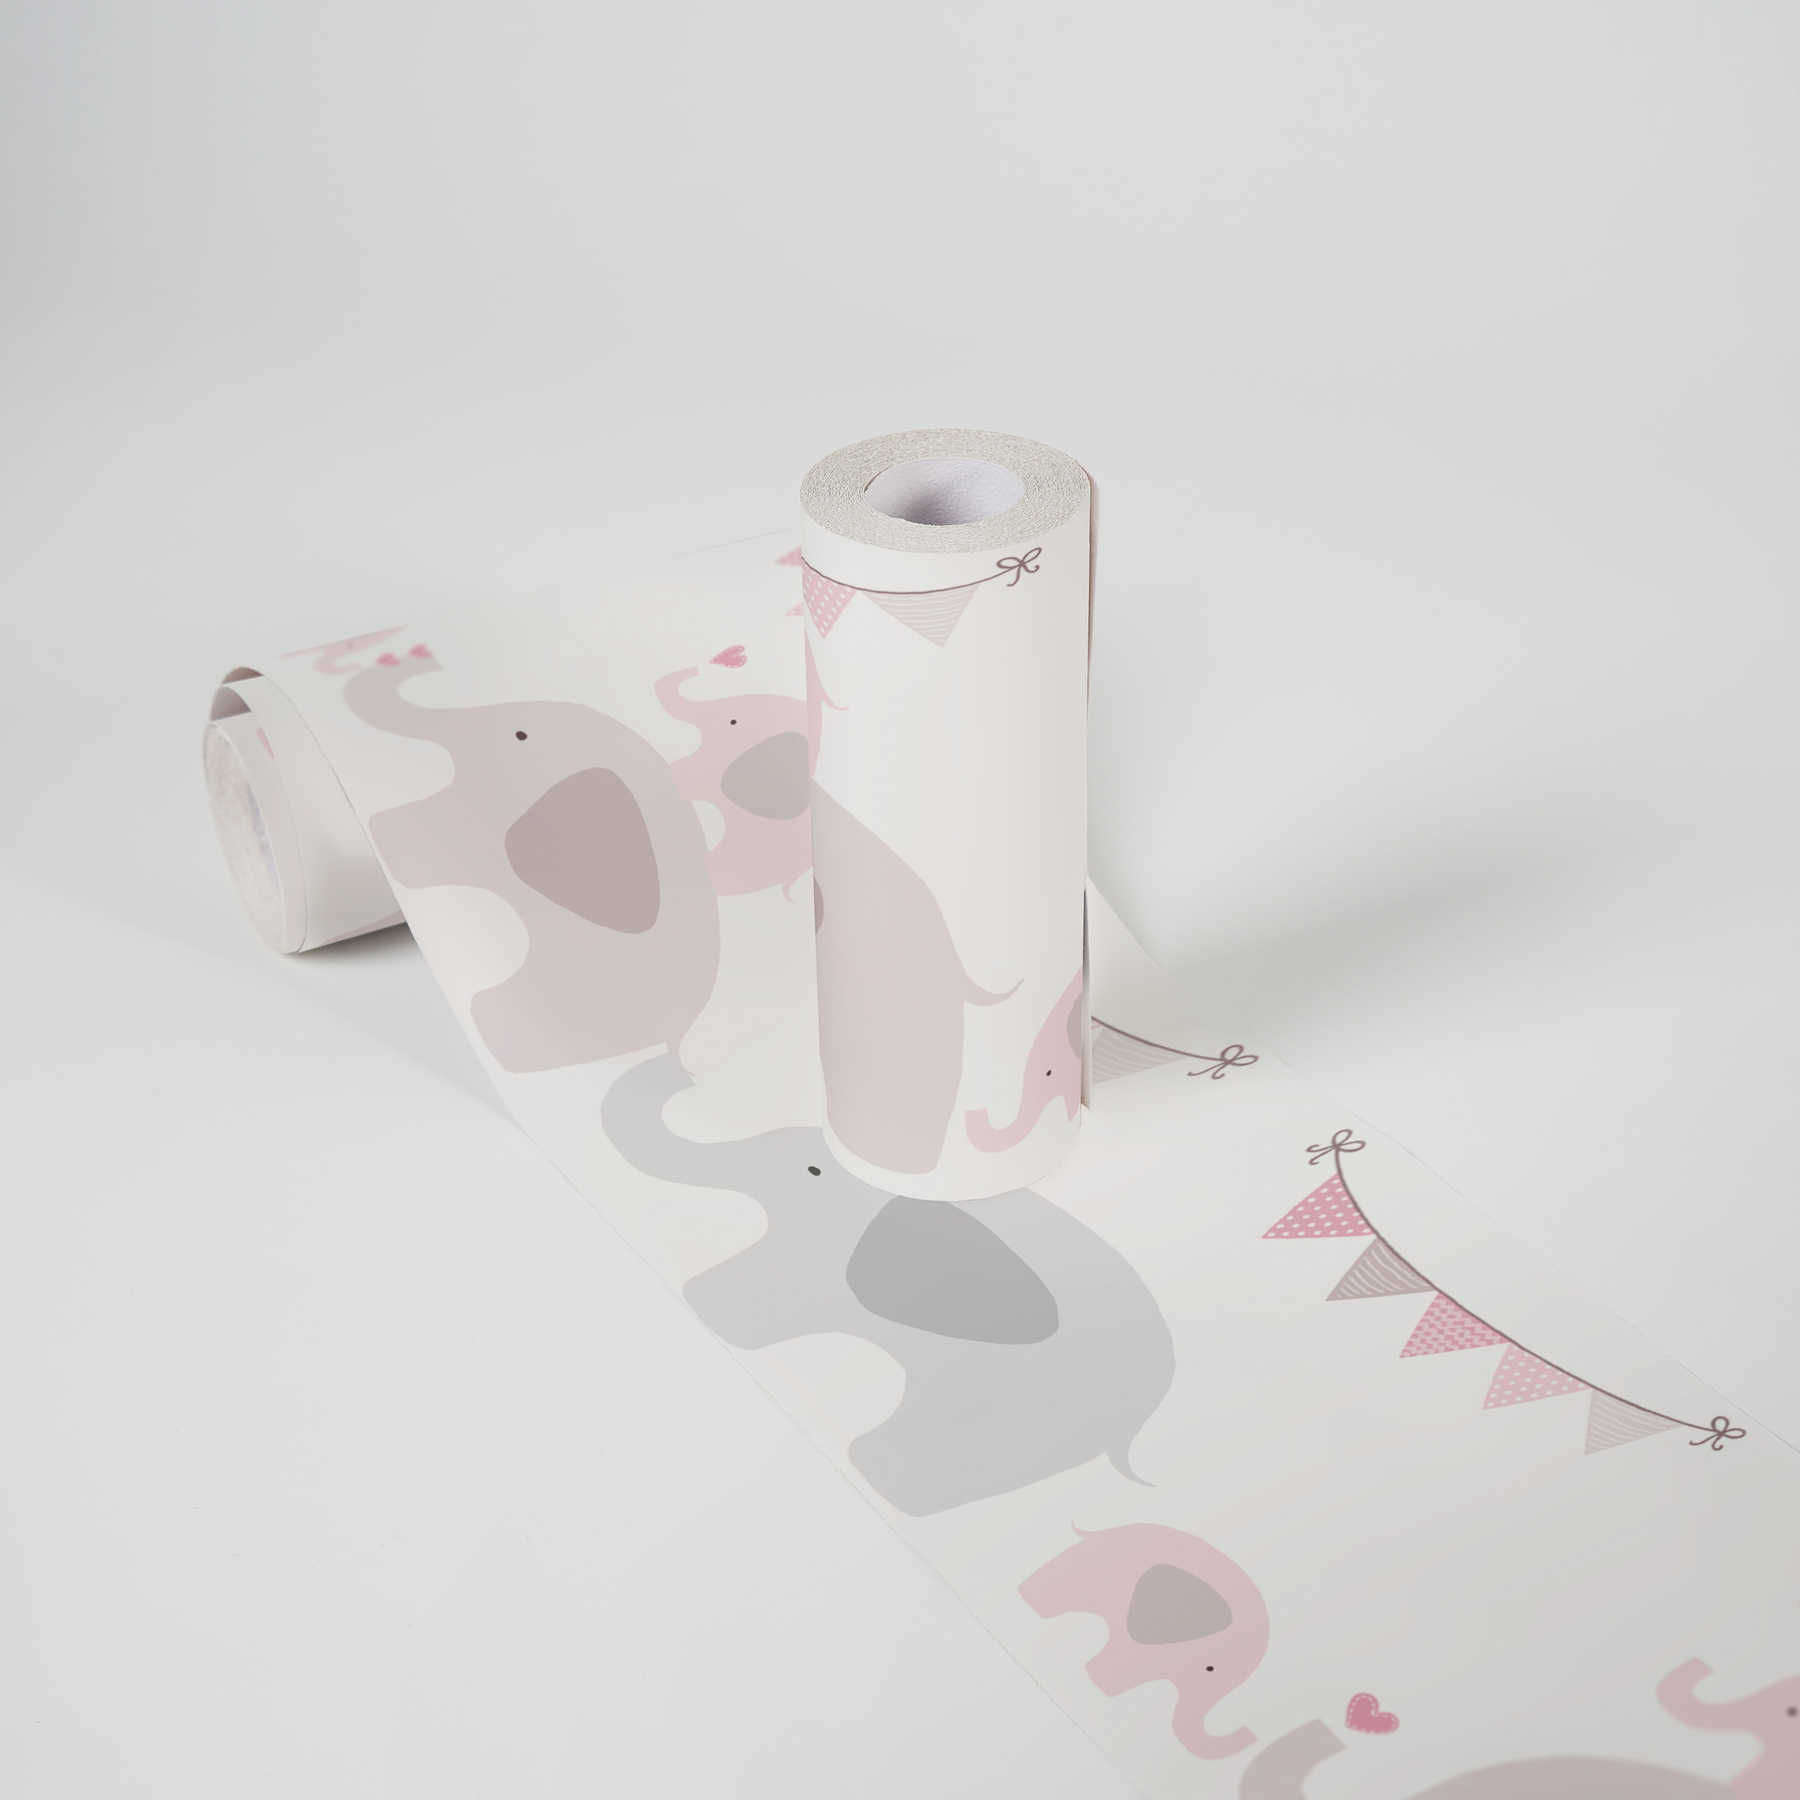             Papier peint bébé "troupeau d'éléphants roses" pour fille - rose, gris, blanc
        